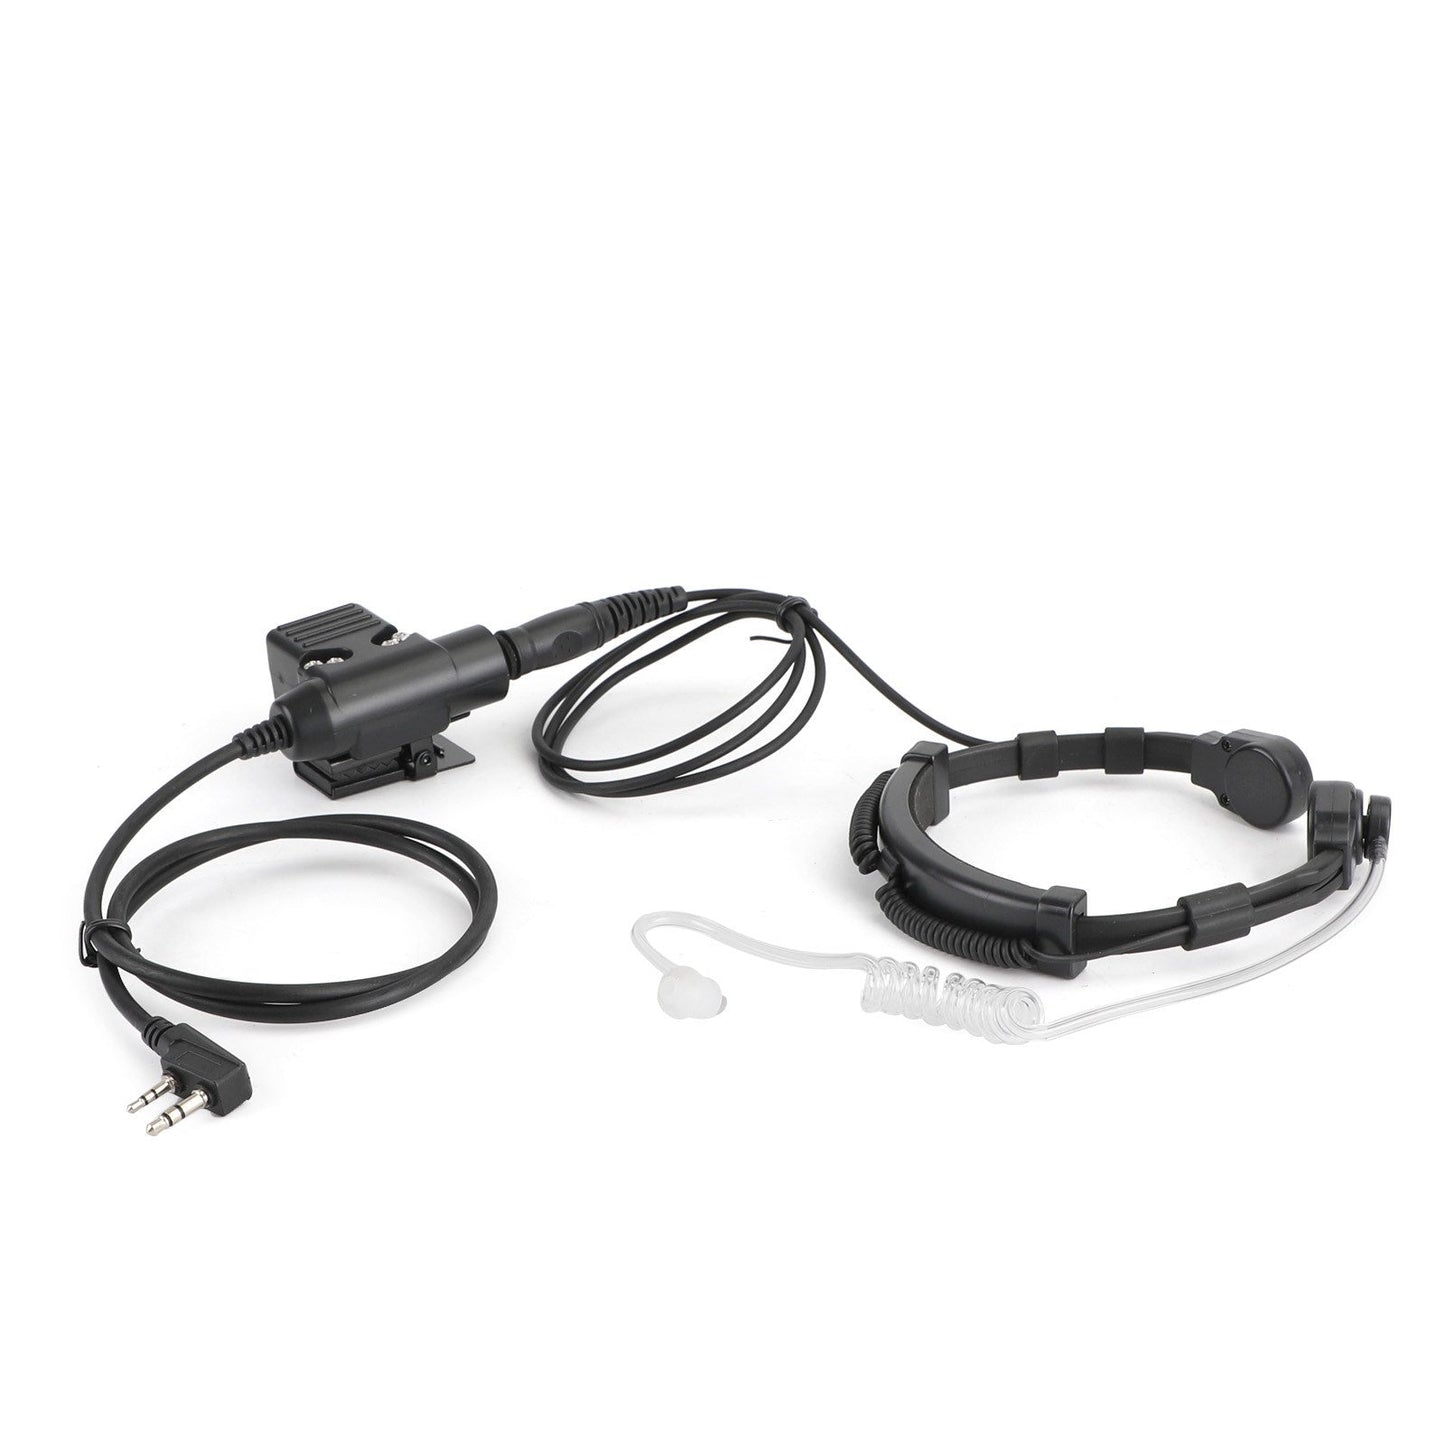 Halsmikrofon-Headset Pasend für Tk3107 TK3207 TK3160 Baofeng UV5R UV-82